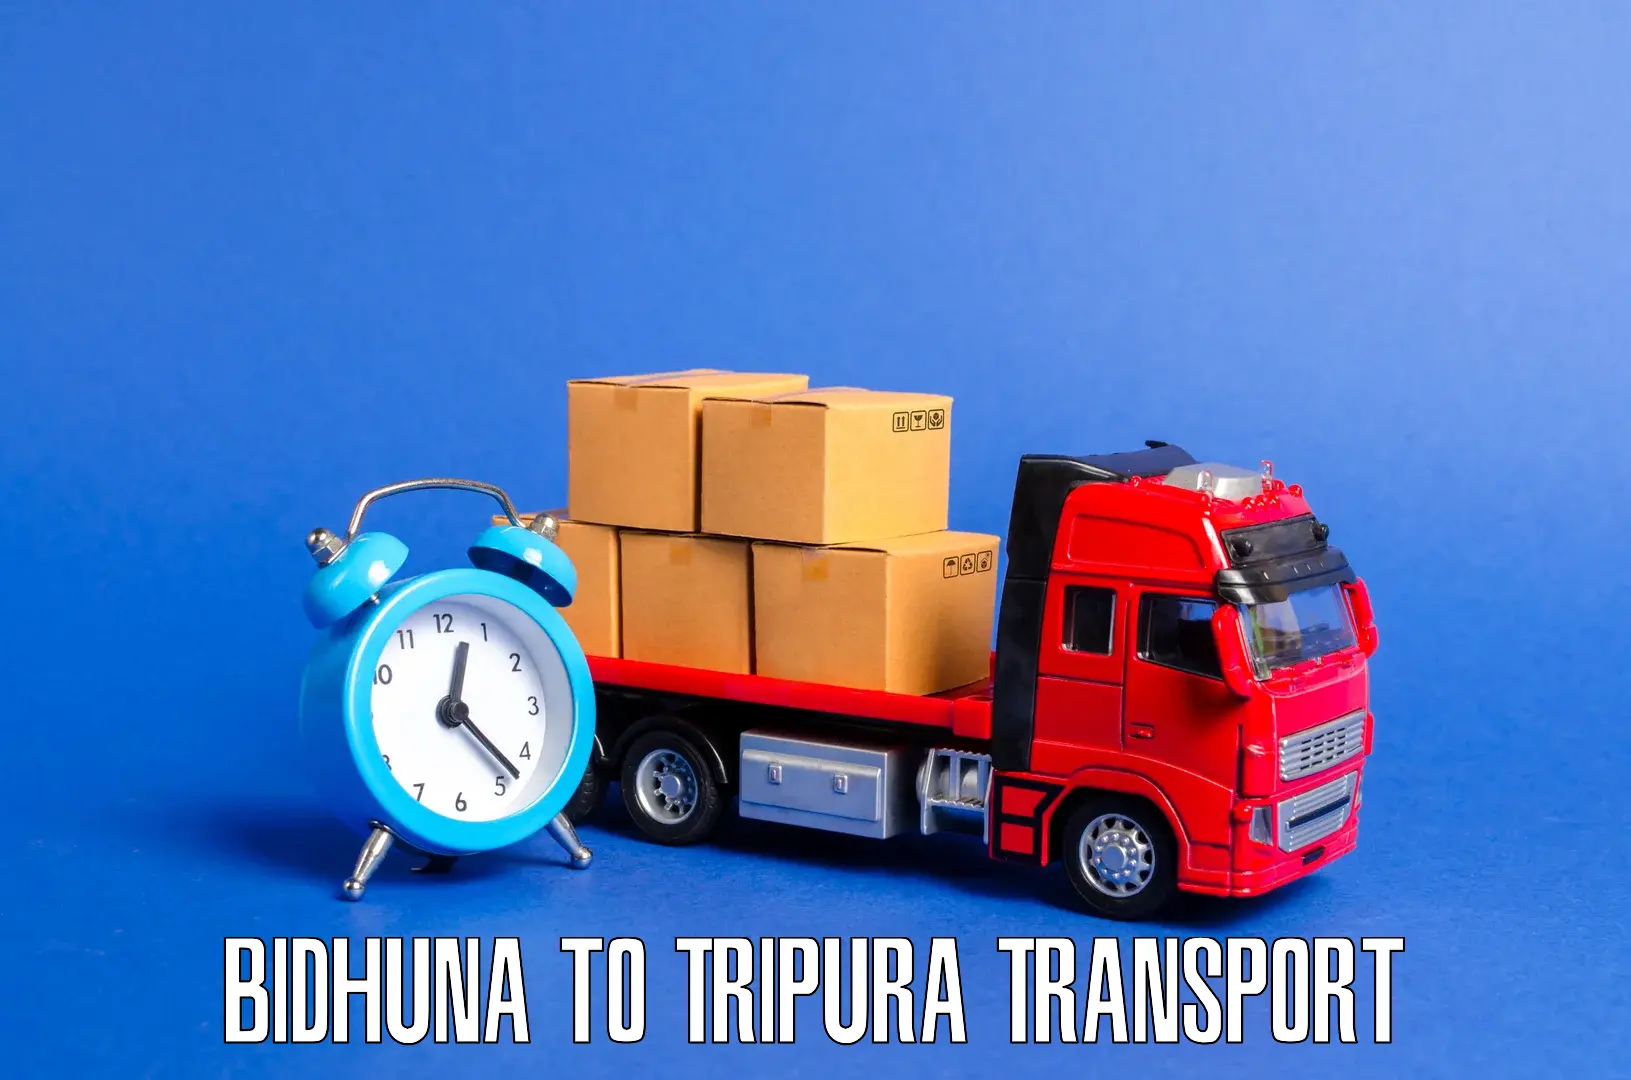 Interstate transport services Bidhuna to Bishalgarh